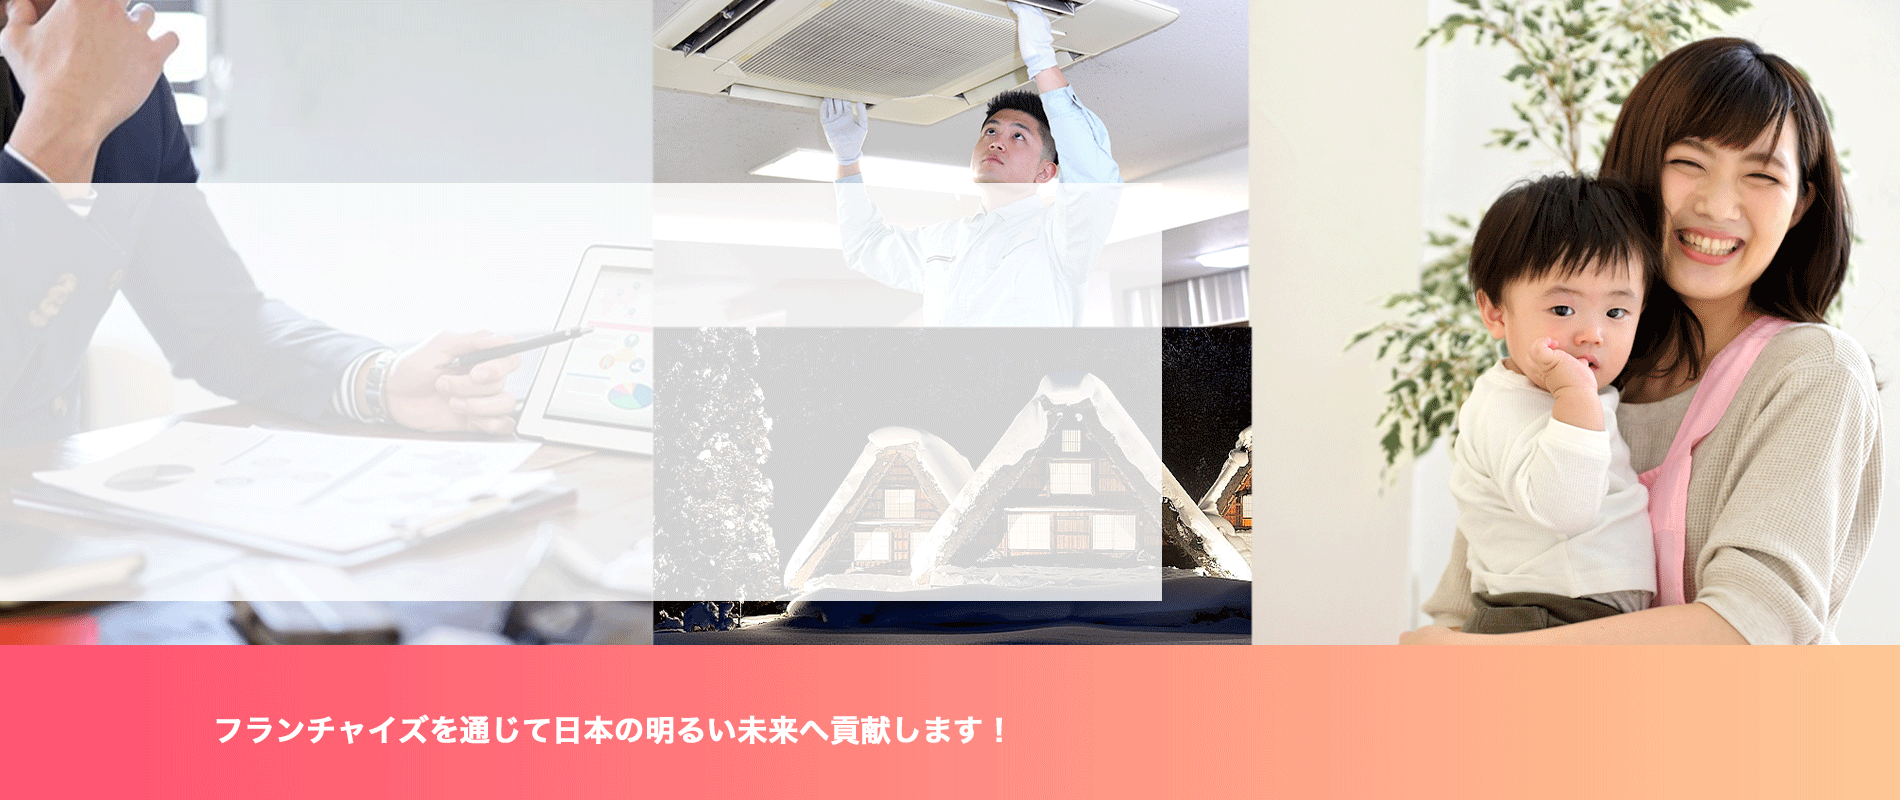 私たちはフランチャイズを通じて 中小企業の経営支援に努め 日本経済の活性化 日本人の総幸福向上に貢献します